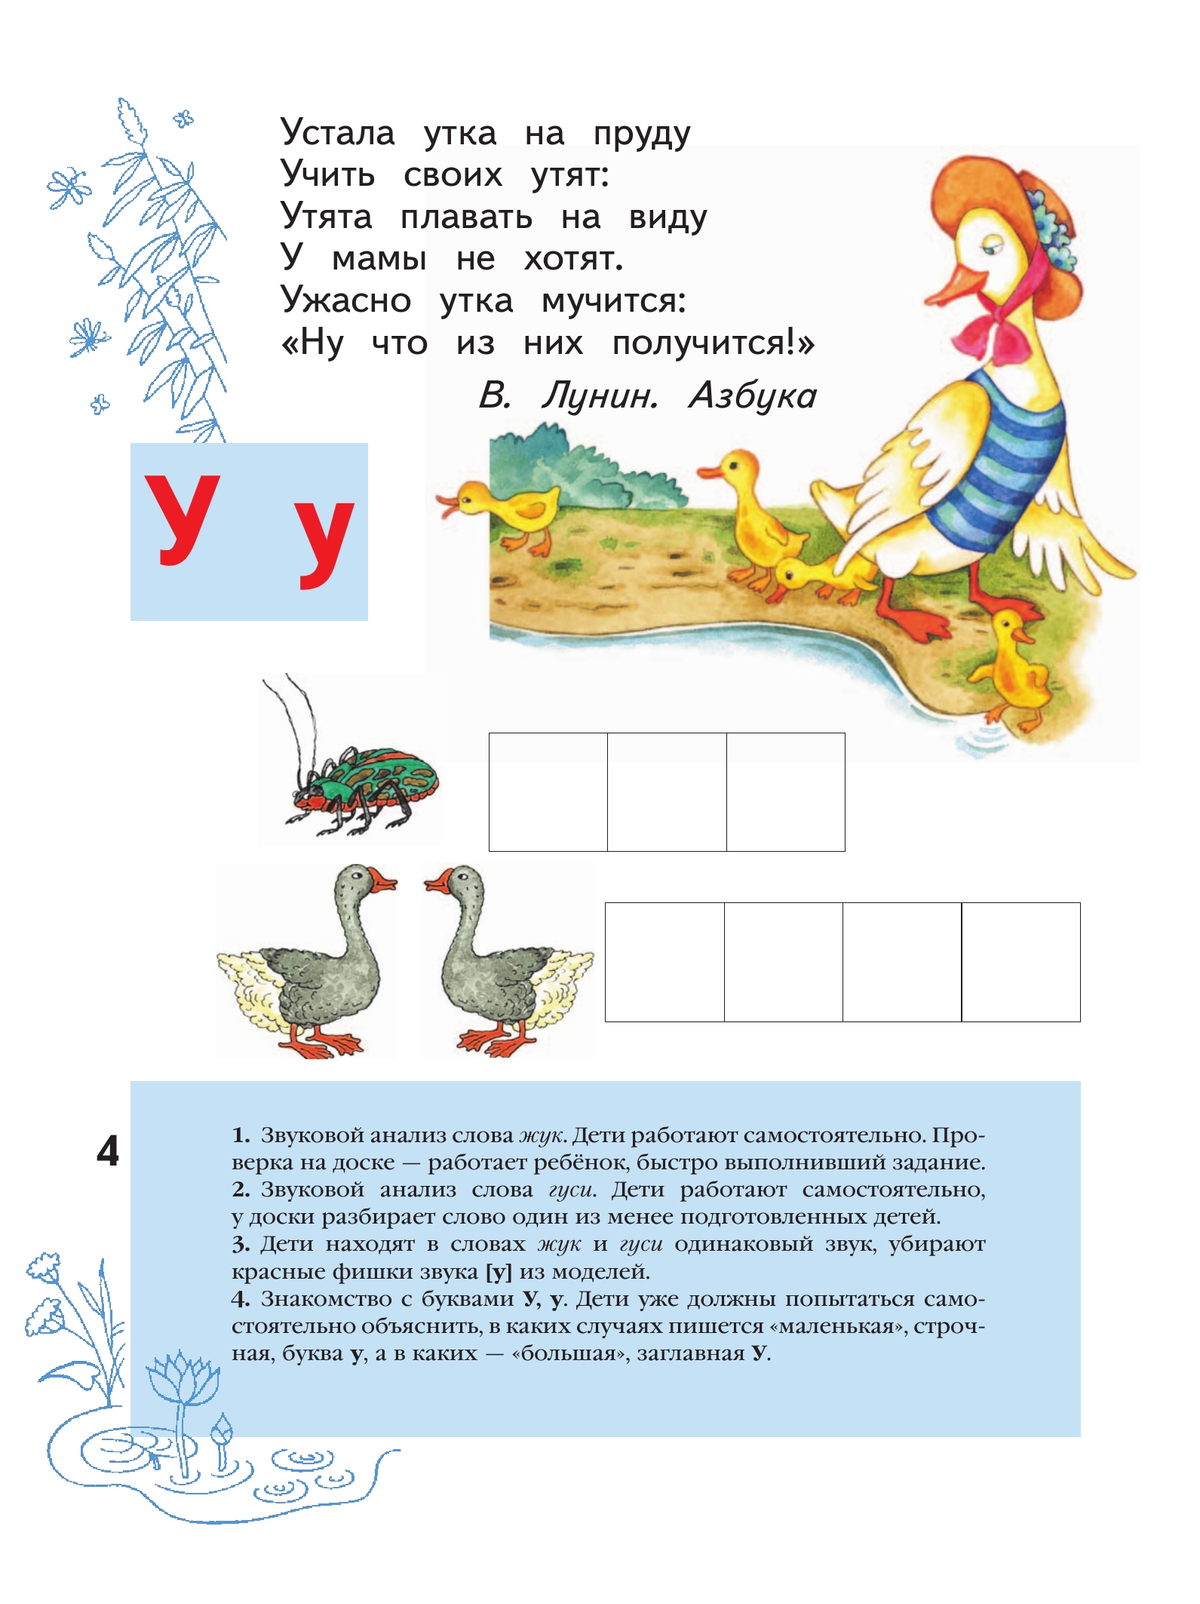 Азбука для дошкольников. Играем со звуками и словами. 5-7 лет. В 3 частях. Часть 2 5